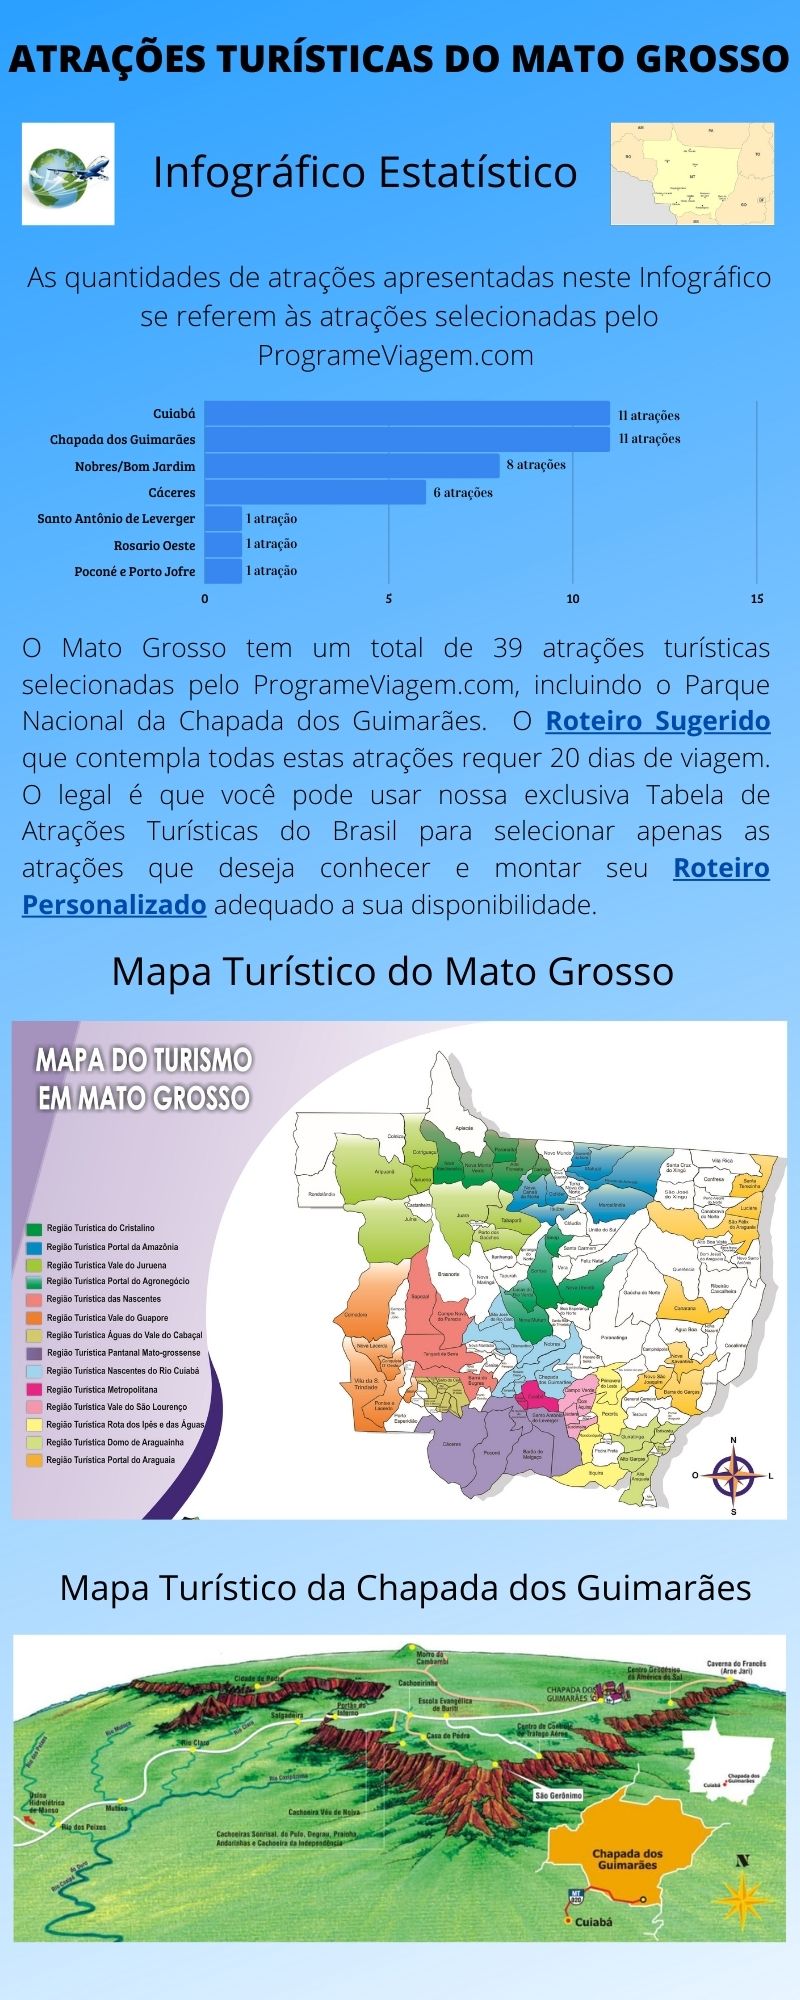 Infográfico Atrações Turísticas do Mato Grosso